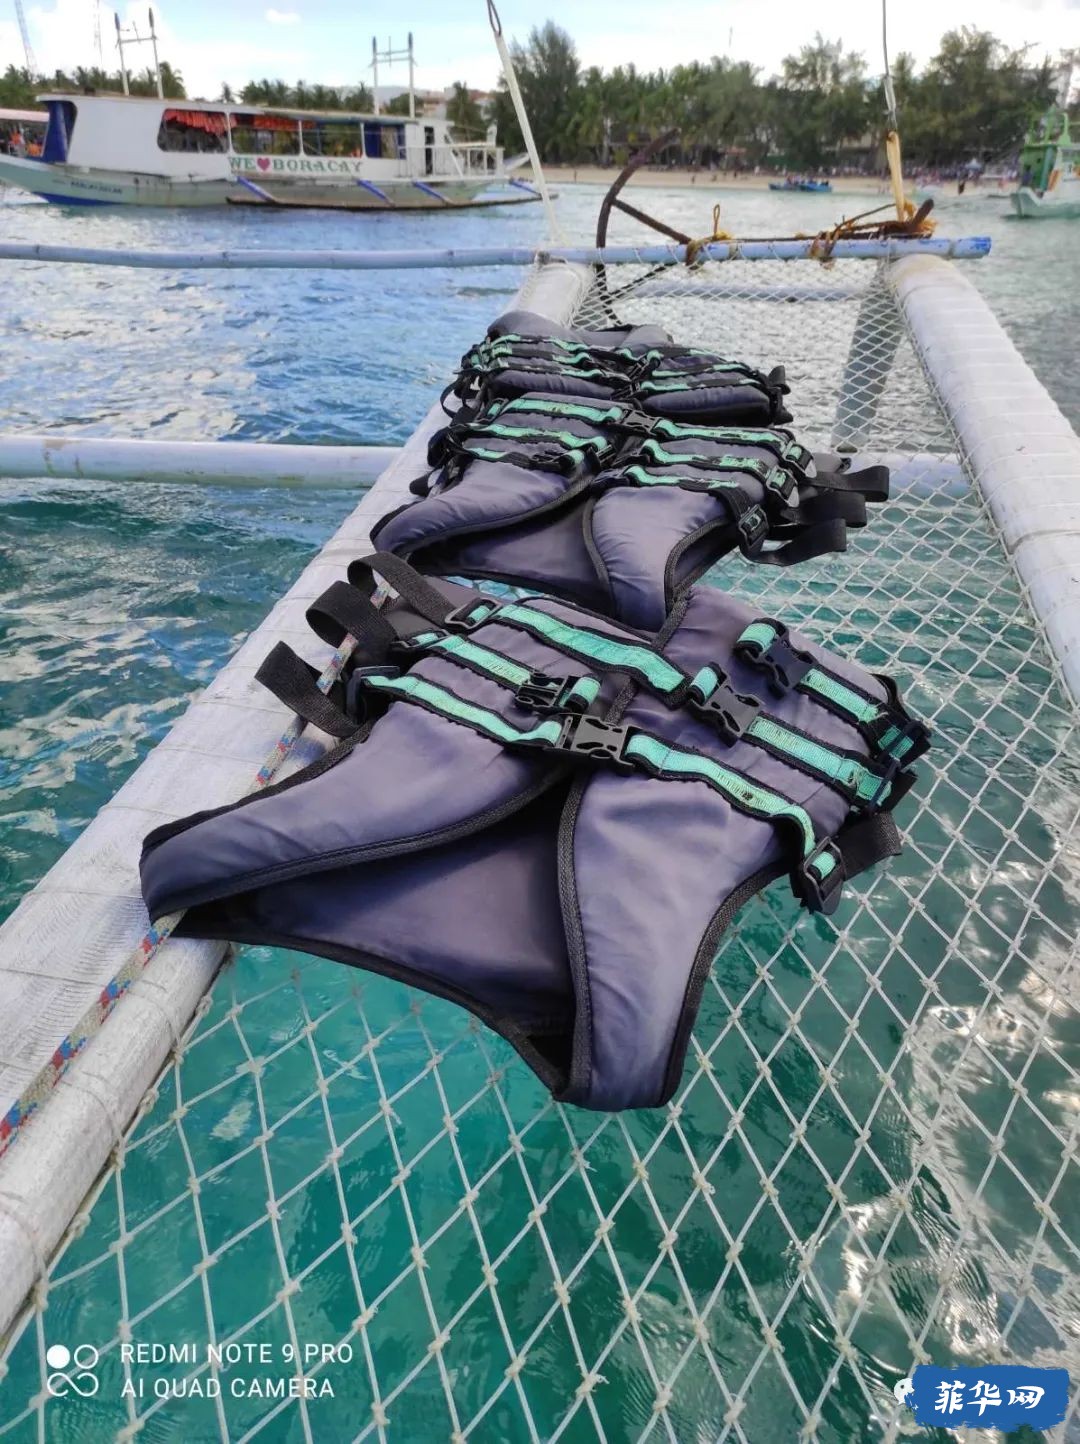 菲律宾被评为世界上第七佳浮潜地——玩在长滩岛w15.jpg